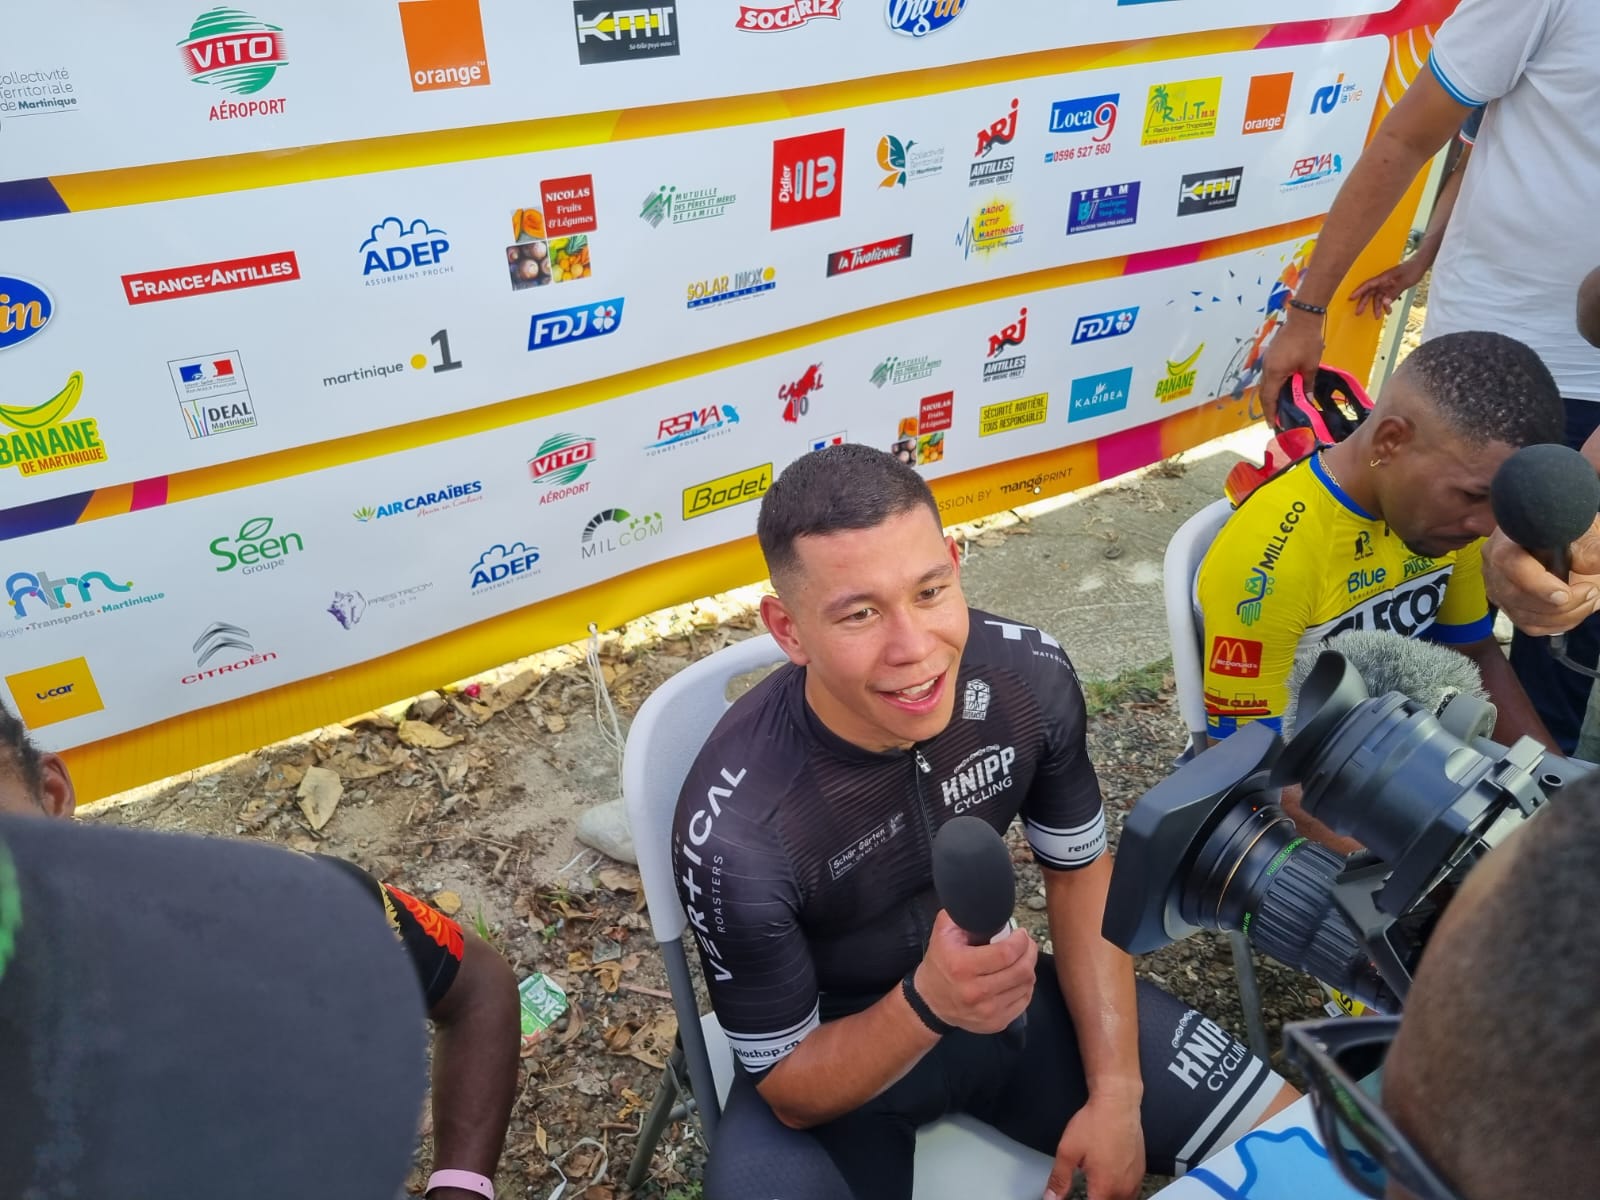     Tour cycliste de Martinique 2023 : Raphaël Clémencio remporte la 1ère étape au Marin

